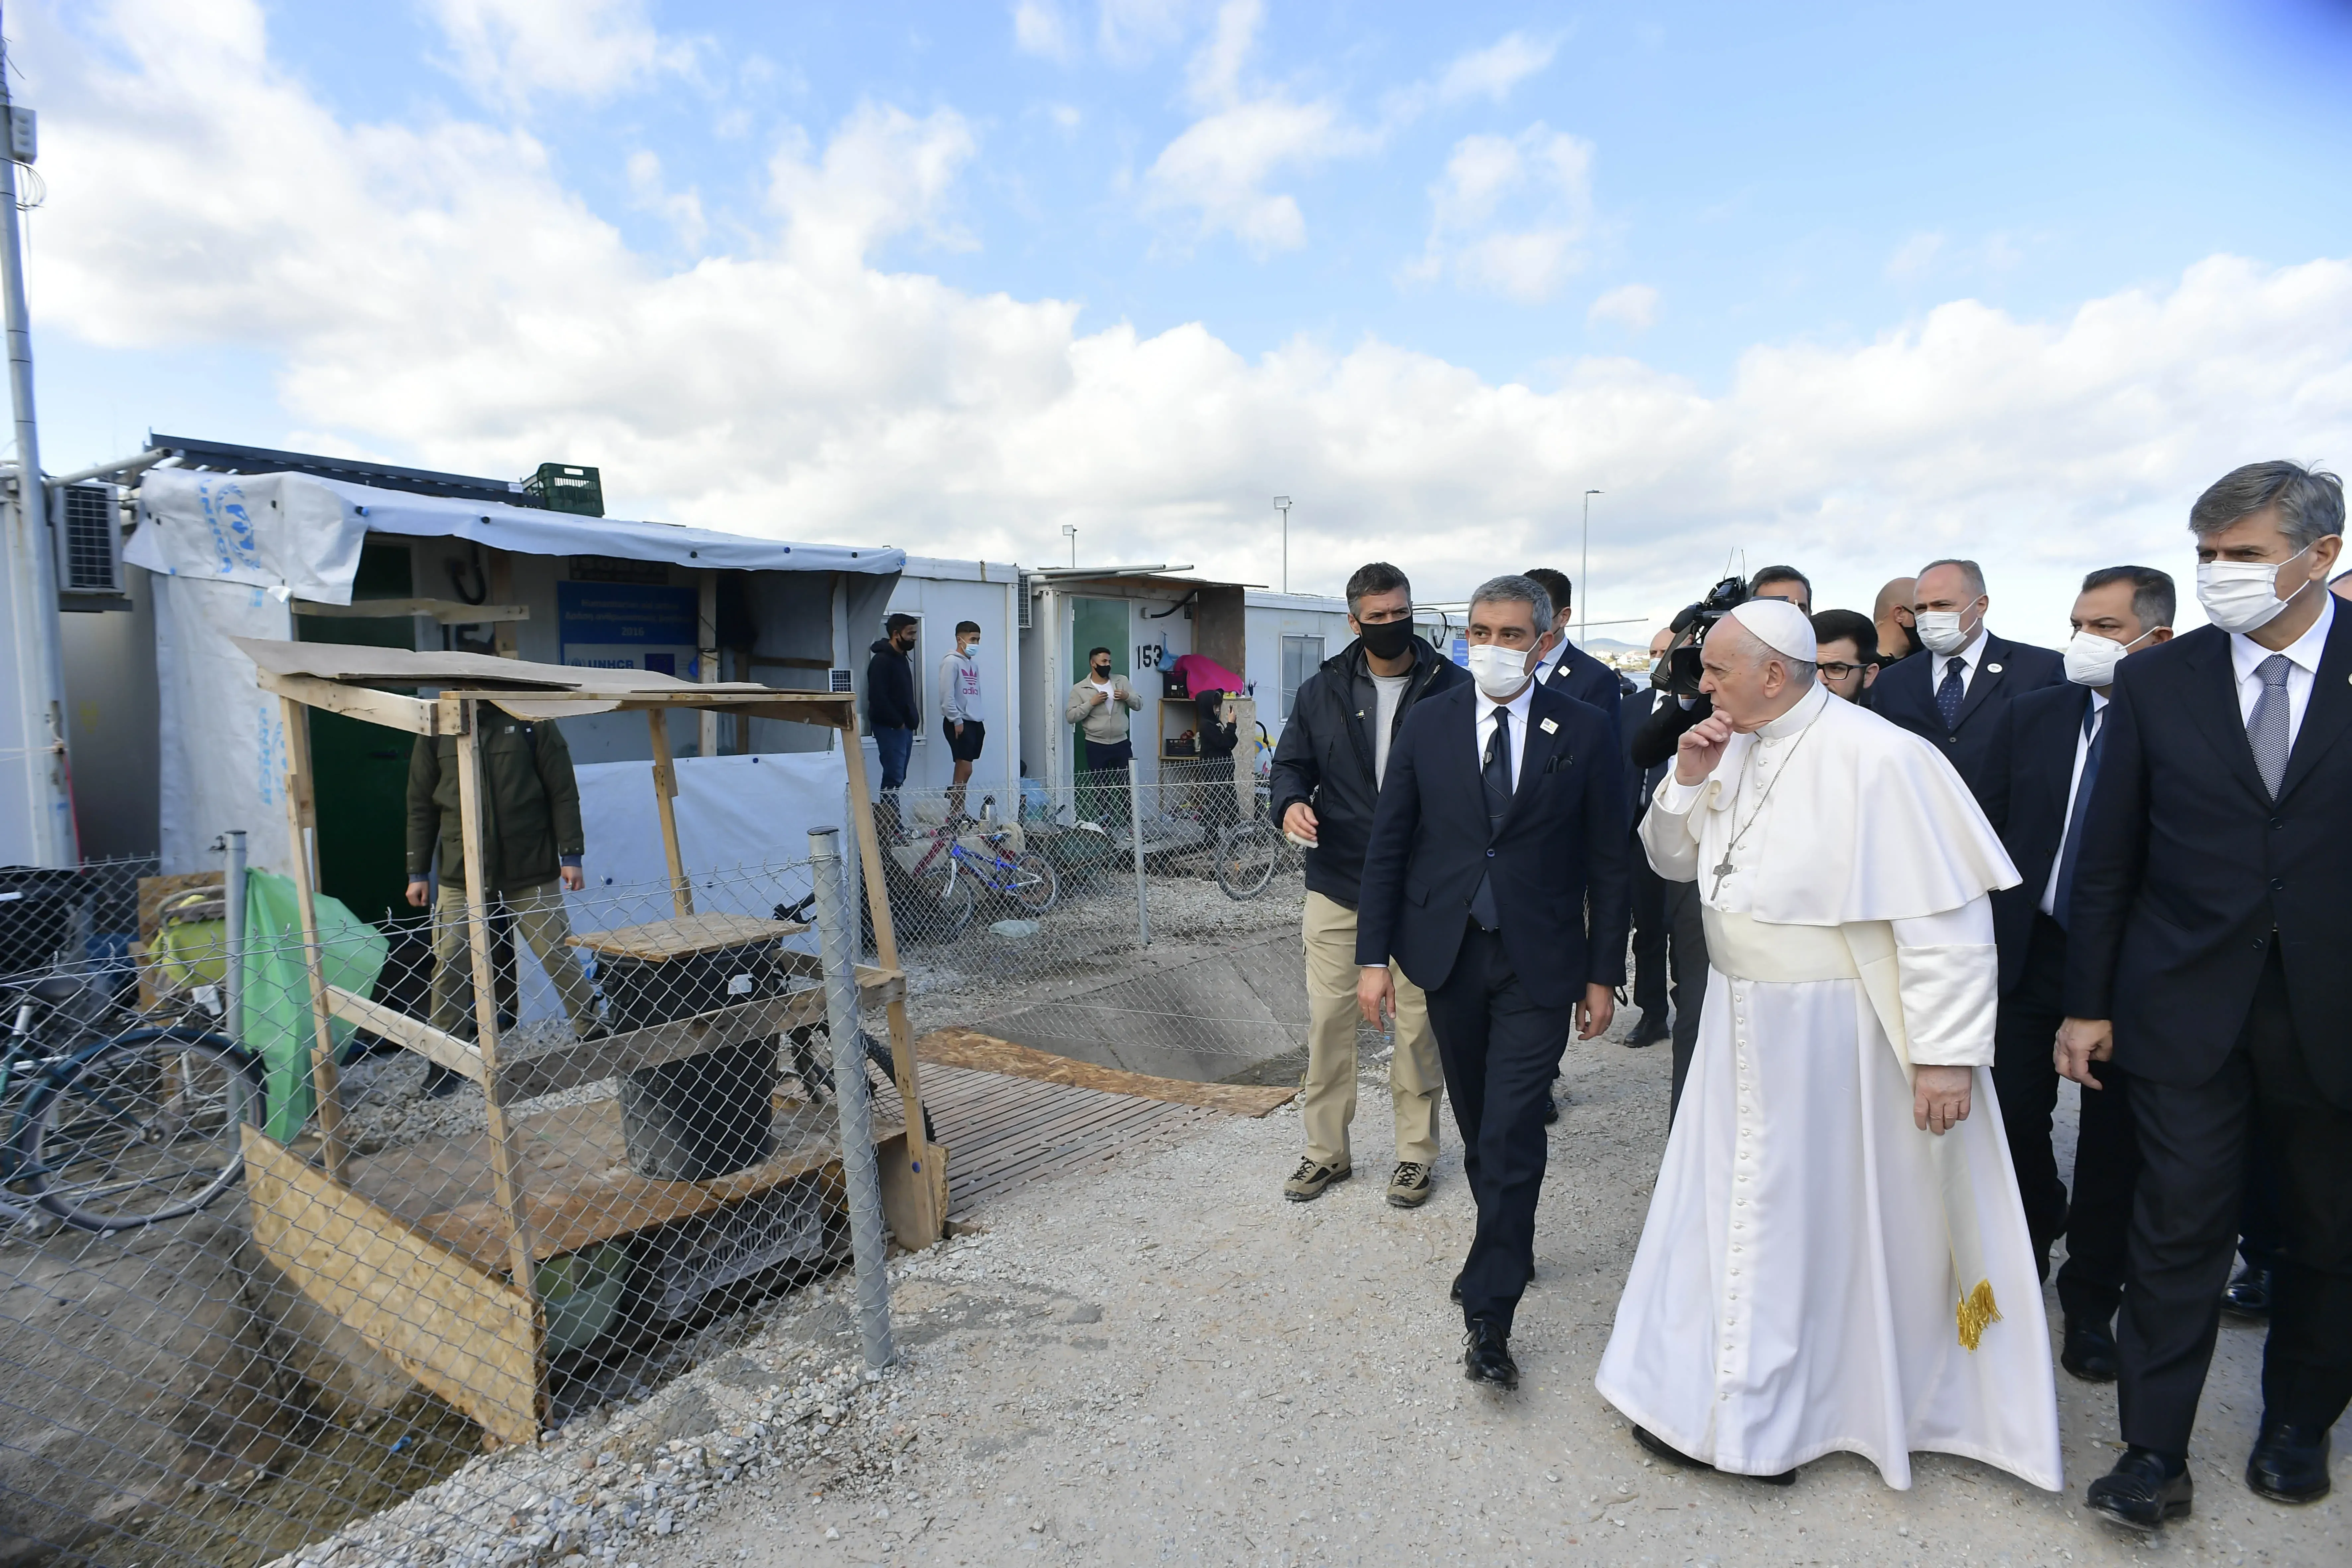 Le pape François visite le camp de réfugiés de Mavrovouni sur l'île grecque de Lesbos, le 5 décembre 2021. Vatican Media